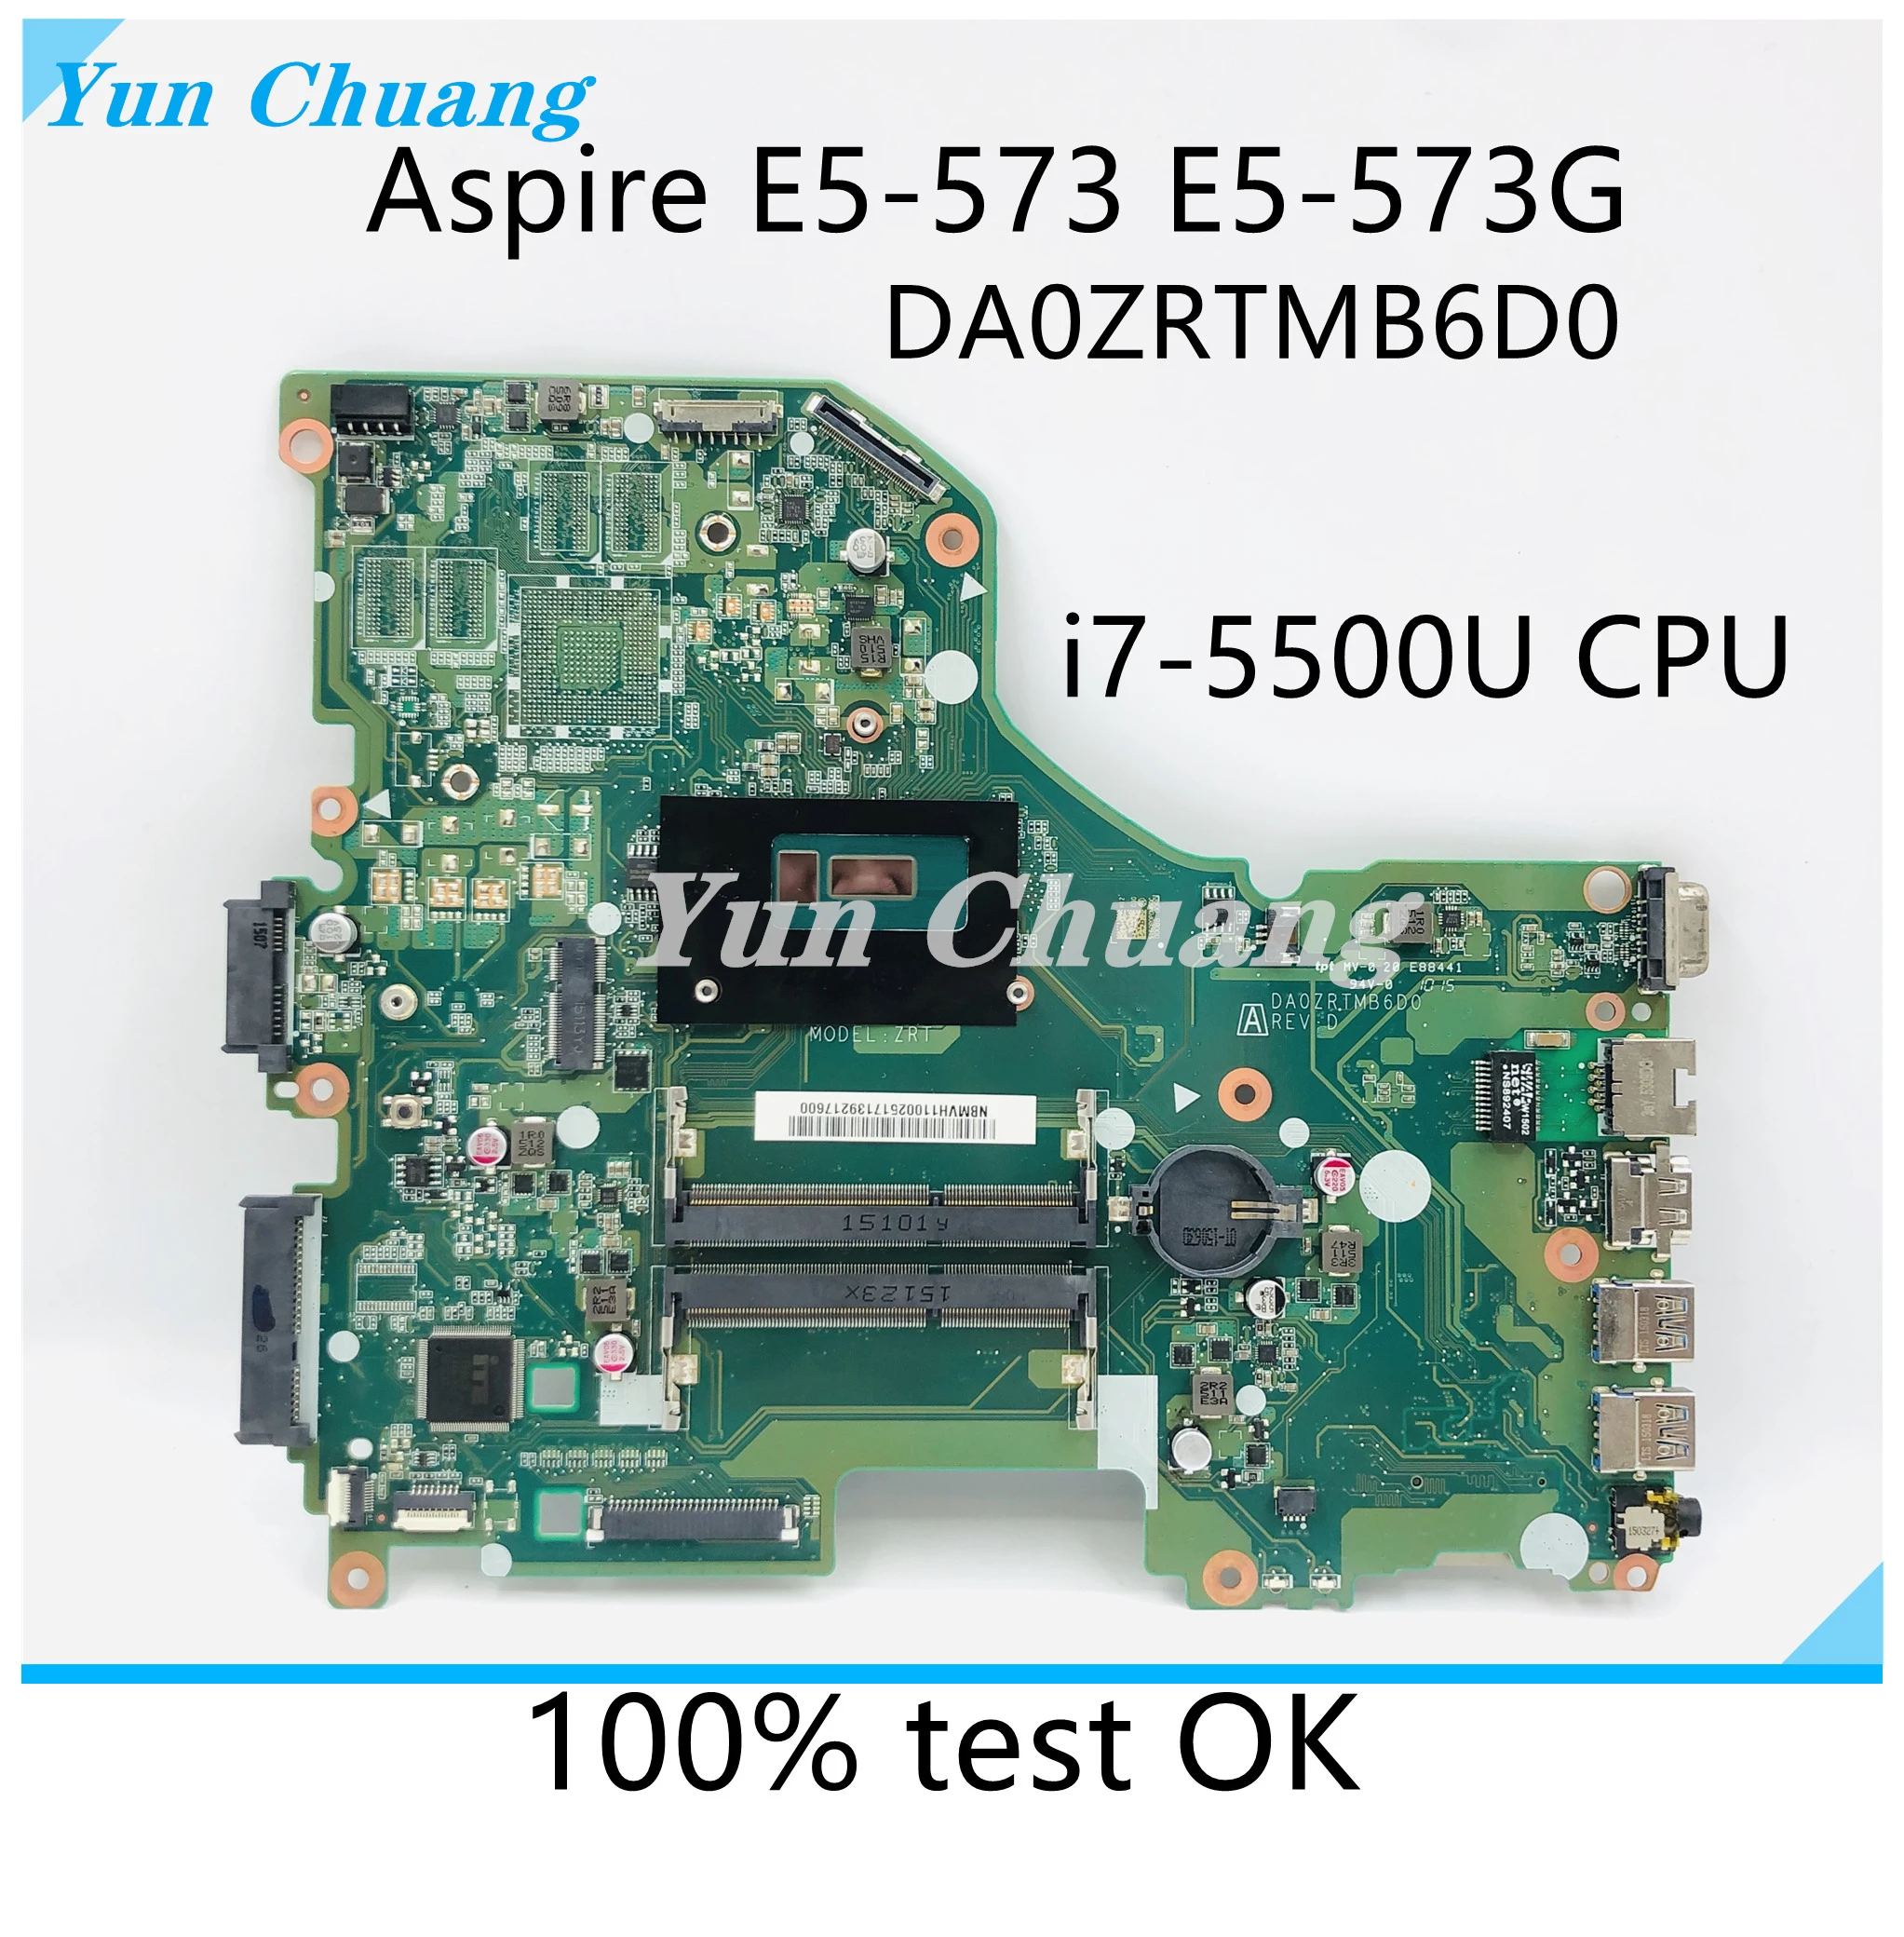 DA0ZRTMB6D0 материнская плата для ноутбука Acer Aspire E5-573 E5-573G материнская плата с процессором I7-5500U DDR3L 100% тест В порядке